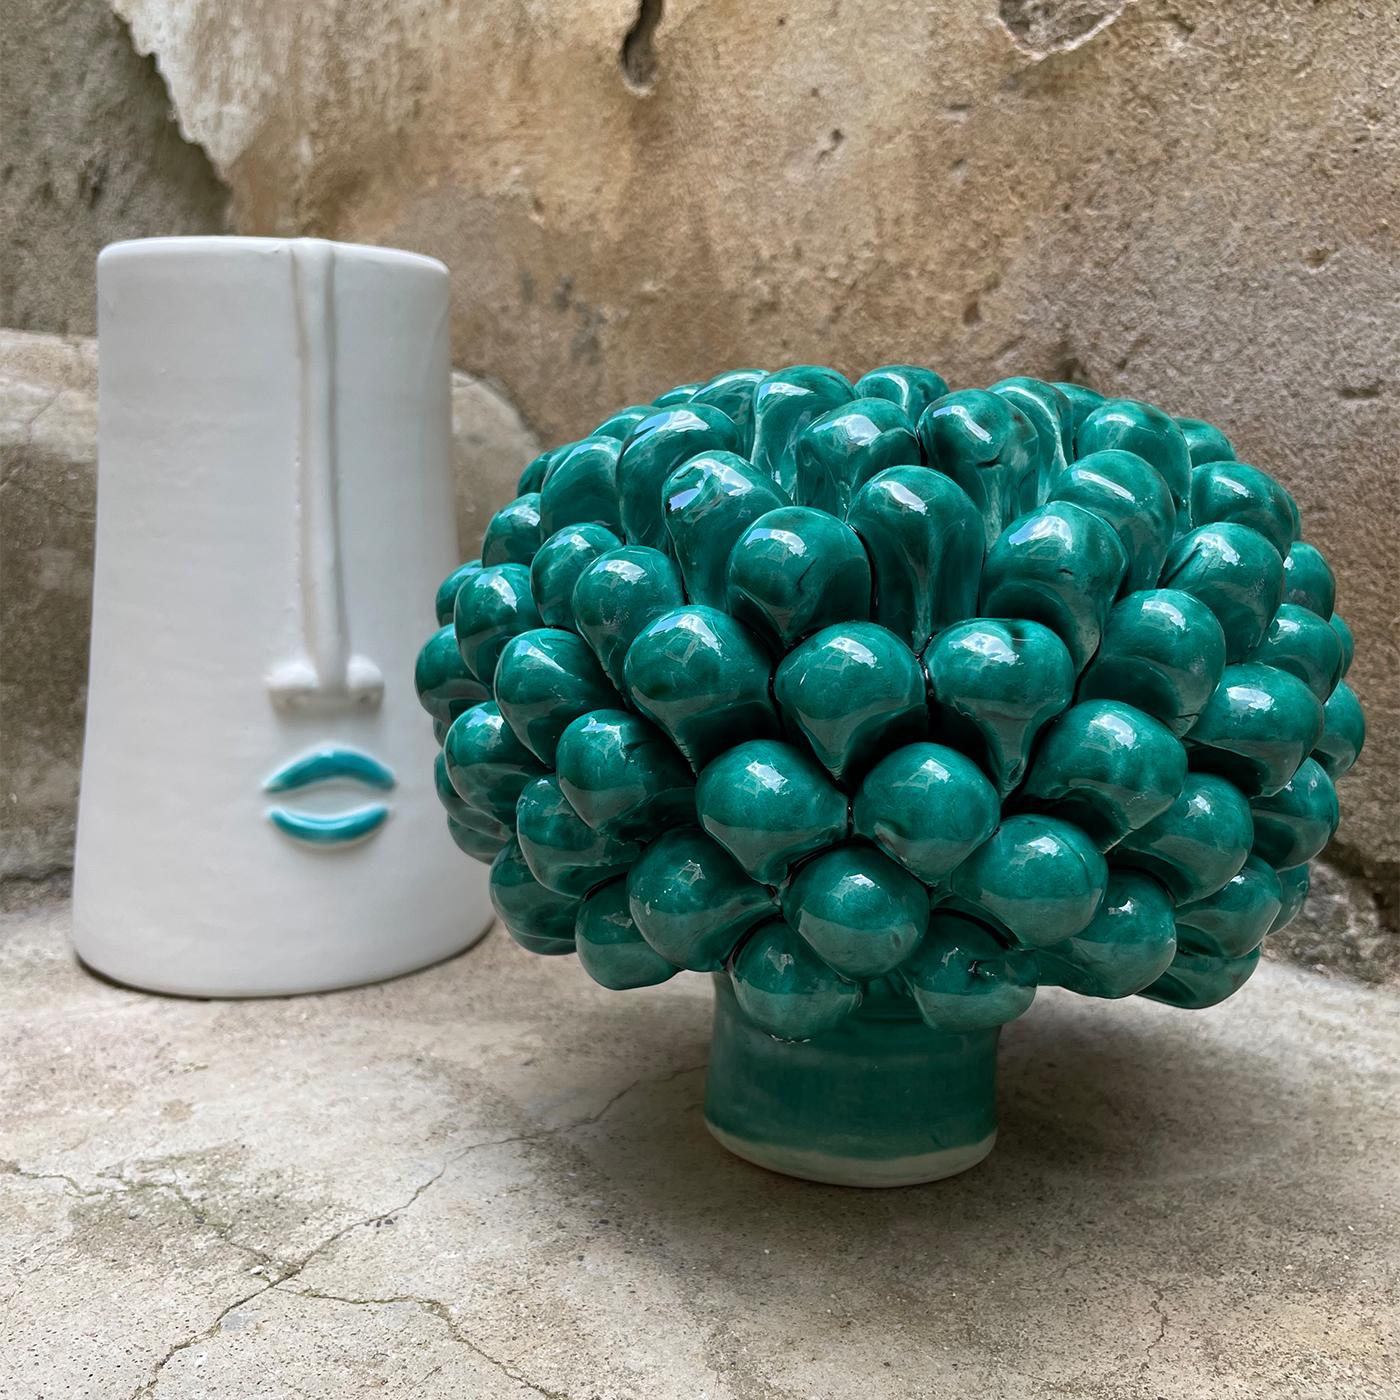 La Pigna in Verde Decorative Box In New Condition For Sale In Milan, IT